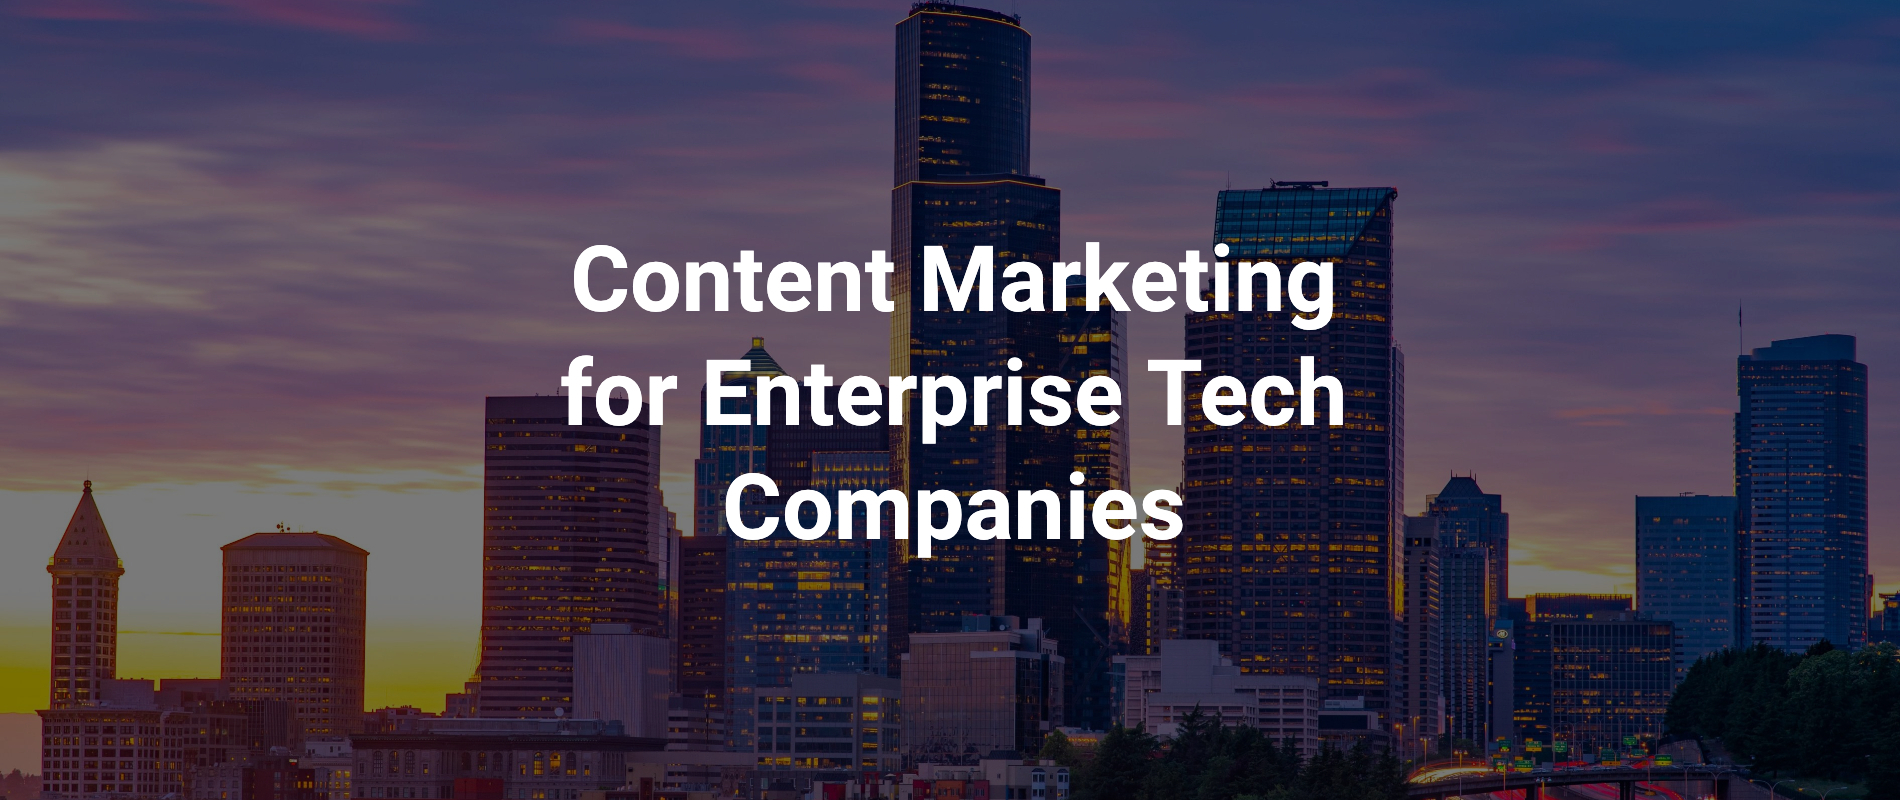 Content Marketing for Enterprise Tech Companies